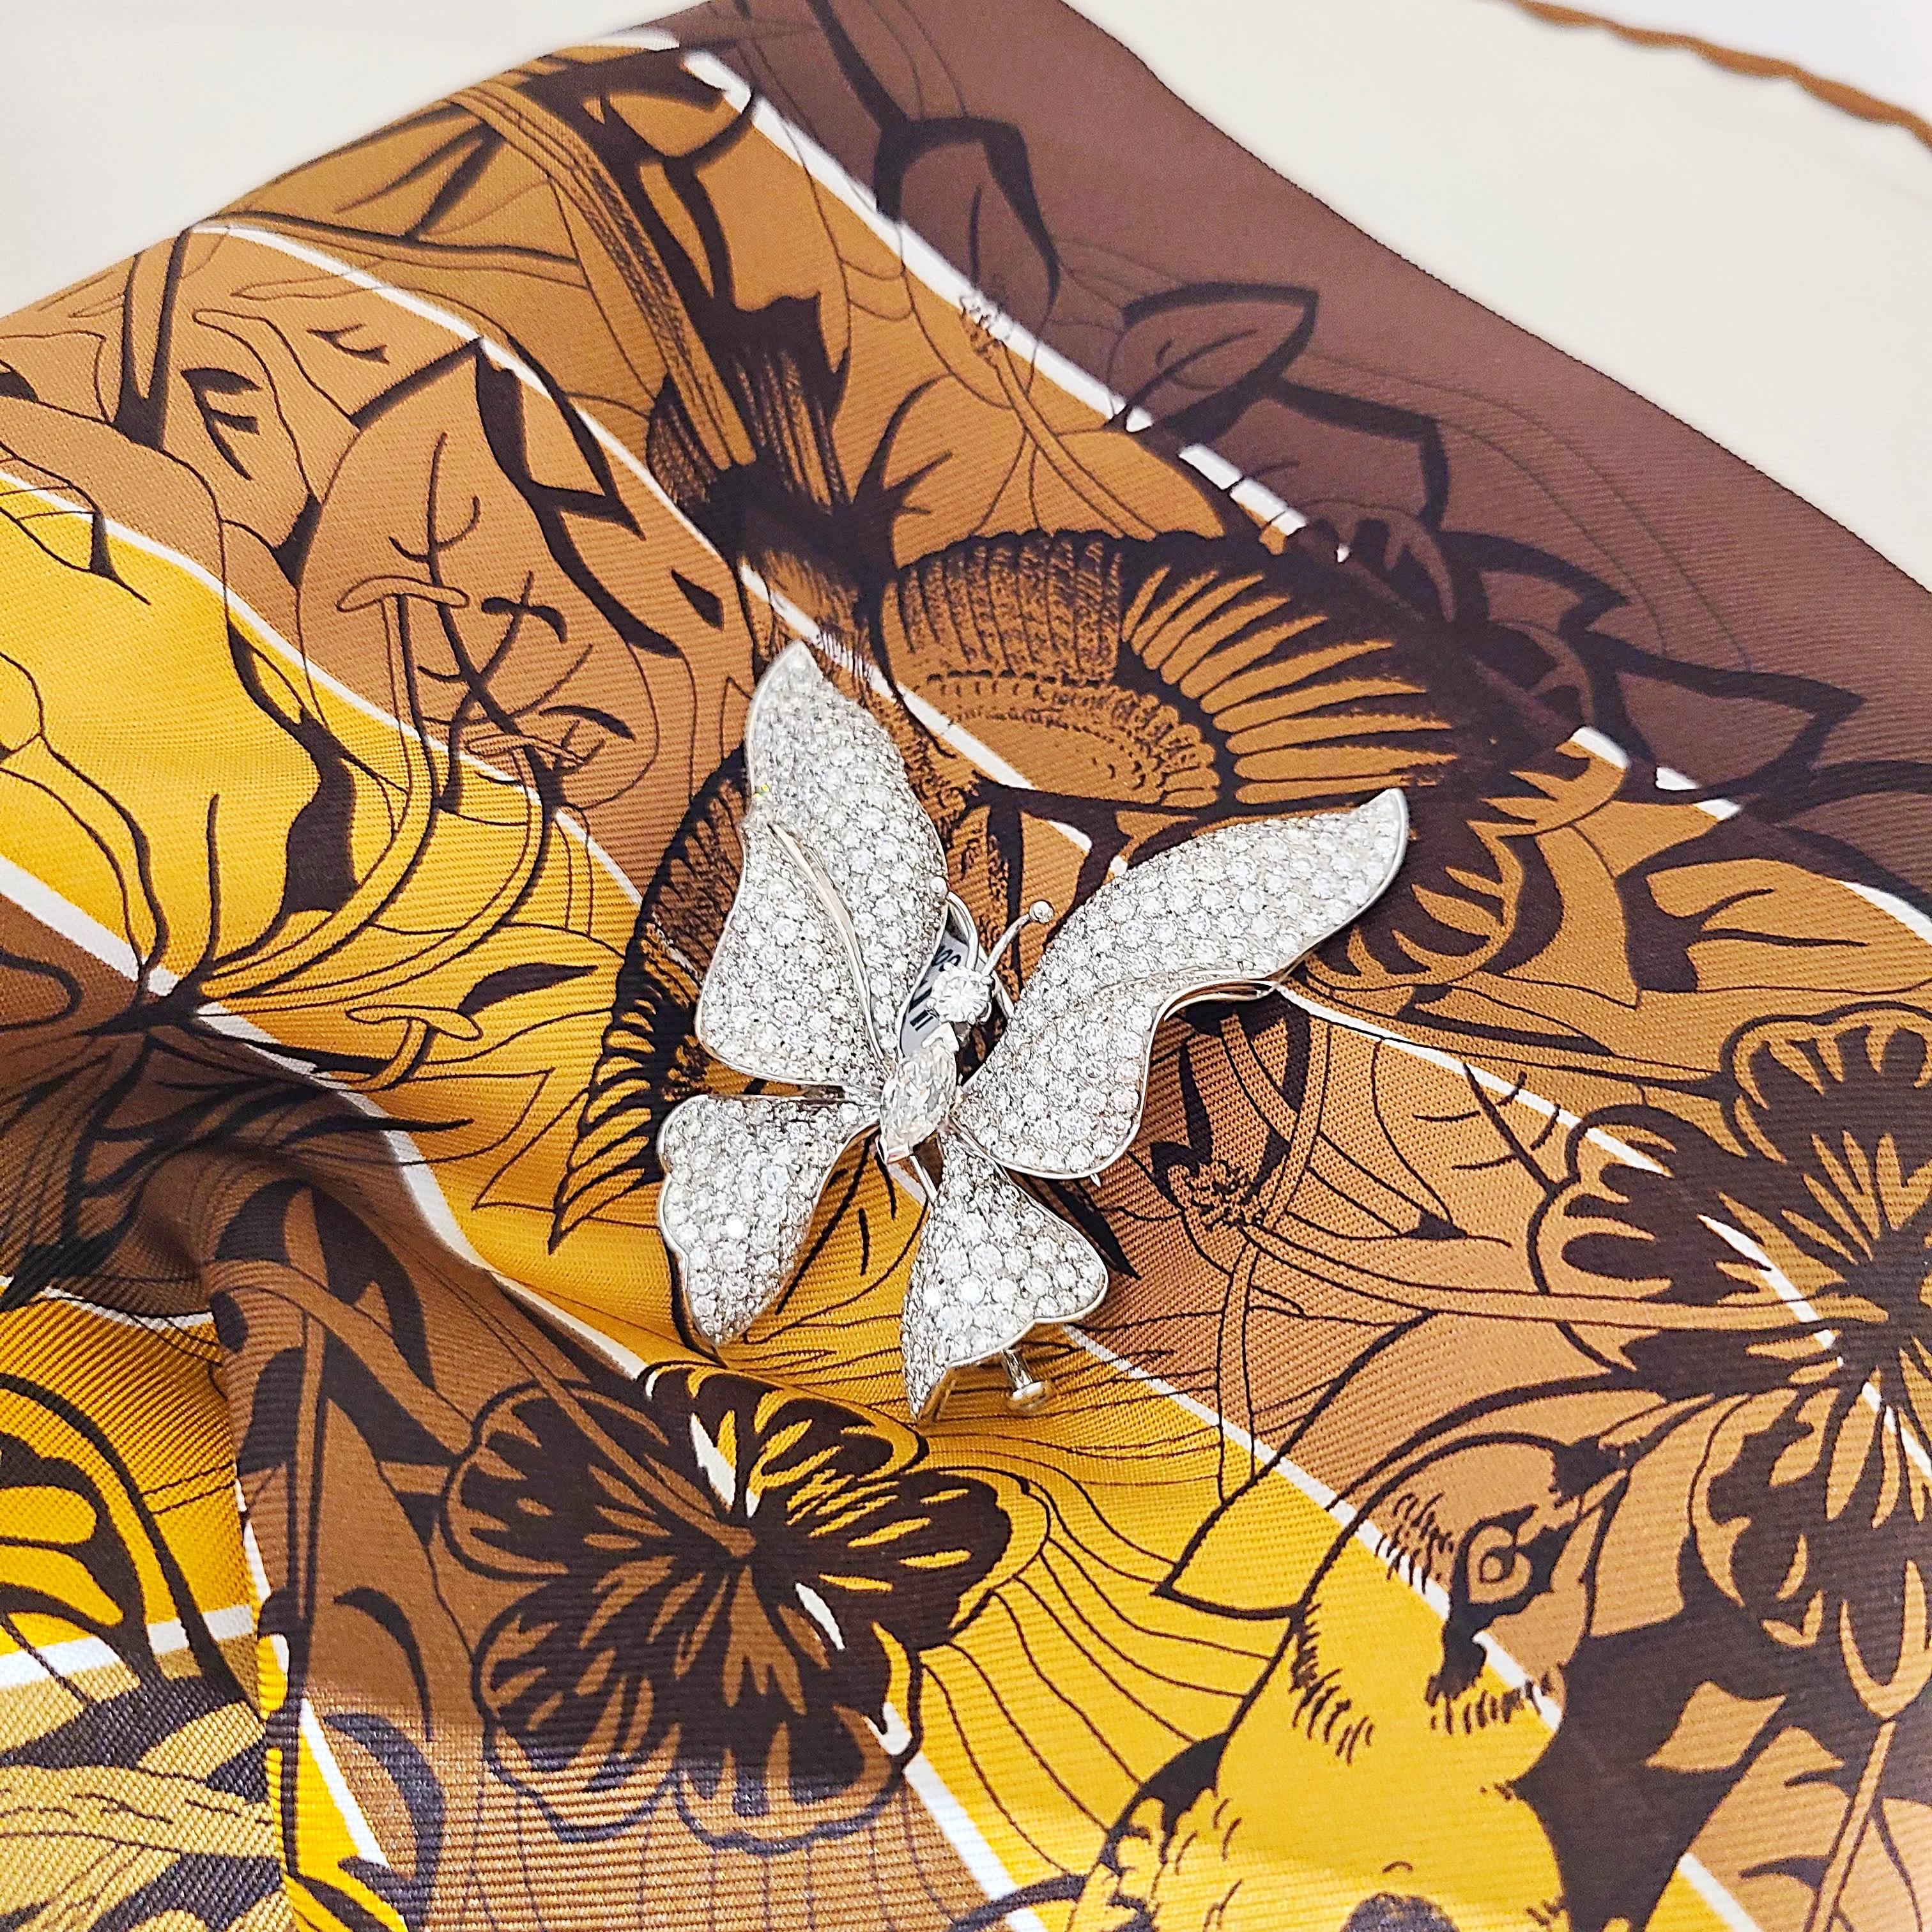 Schmetterlingsbrosche aus 18 Karat Weißgold. Die Flügel des Schmetterlings sind mit runden Diamanten besetzt. Das Zentrum ist mit runden Solitär-Brillanten und Marquise-Diamanten besetzt. Die Brosche misst 2,25 x 2 und hat eine doppelte